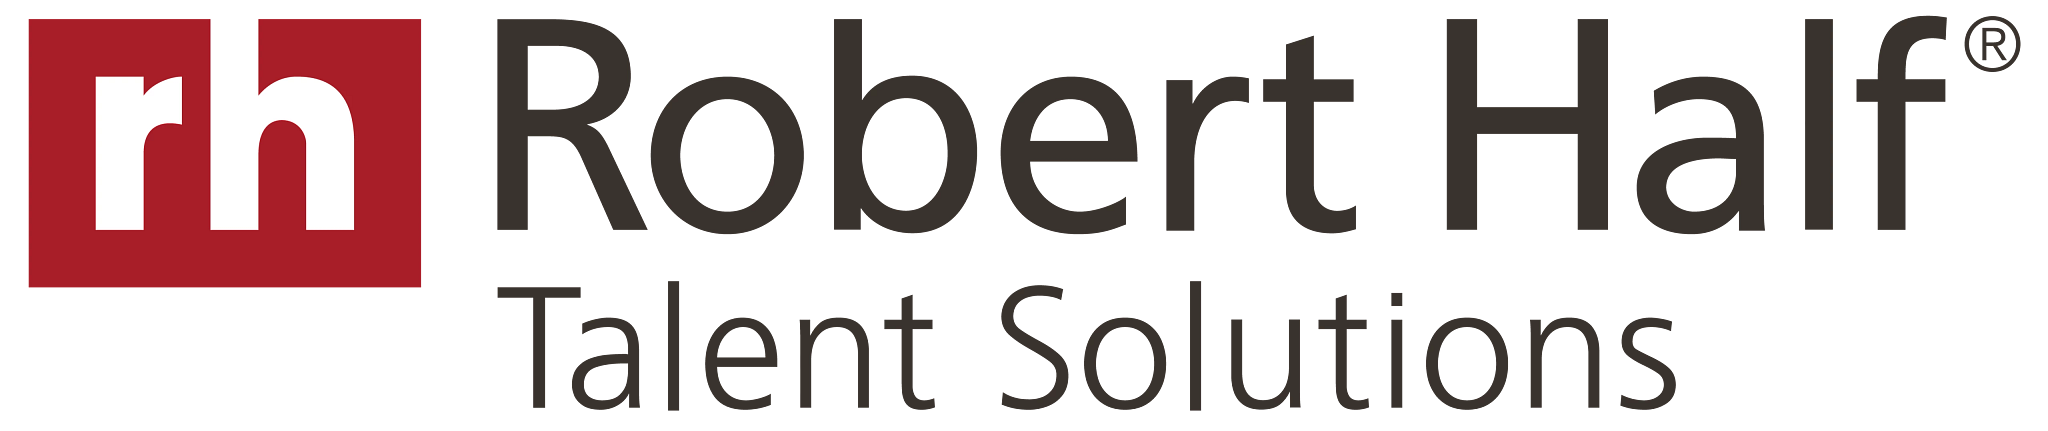 Robert Half Talent Solutions